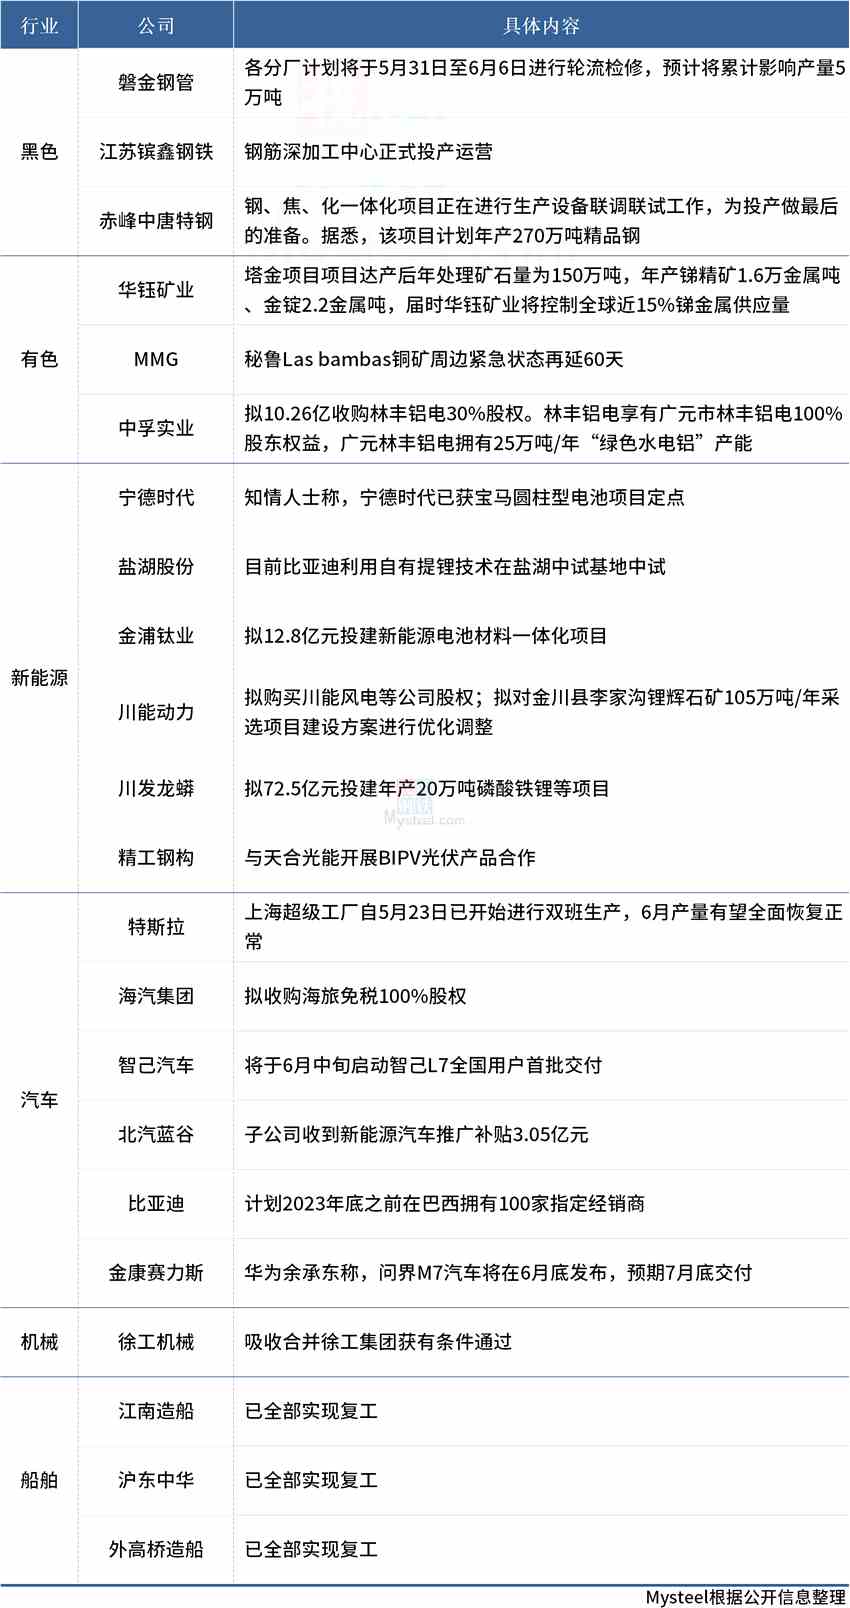 公司动态汇总：中唐特钢即将投产，上海三大造船厂全部复工